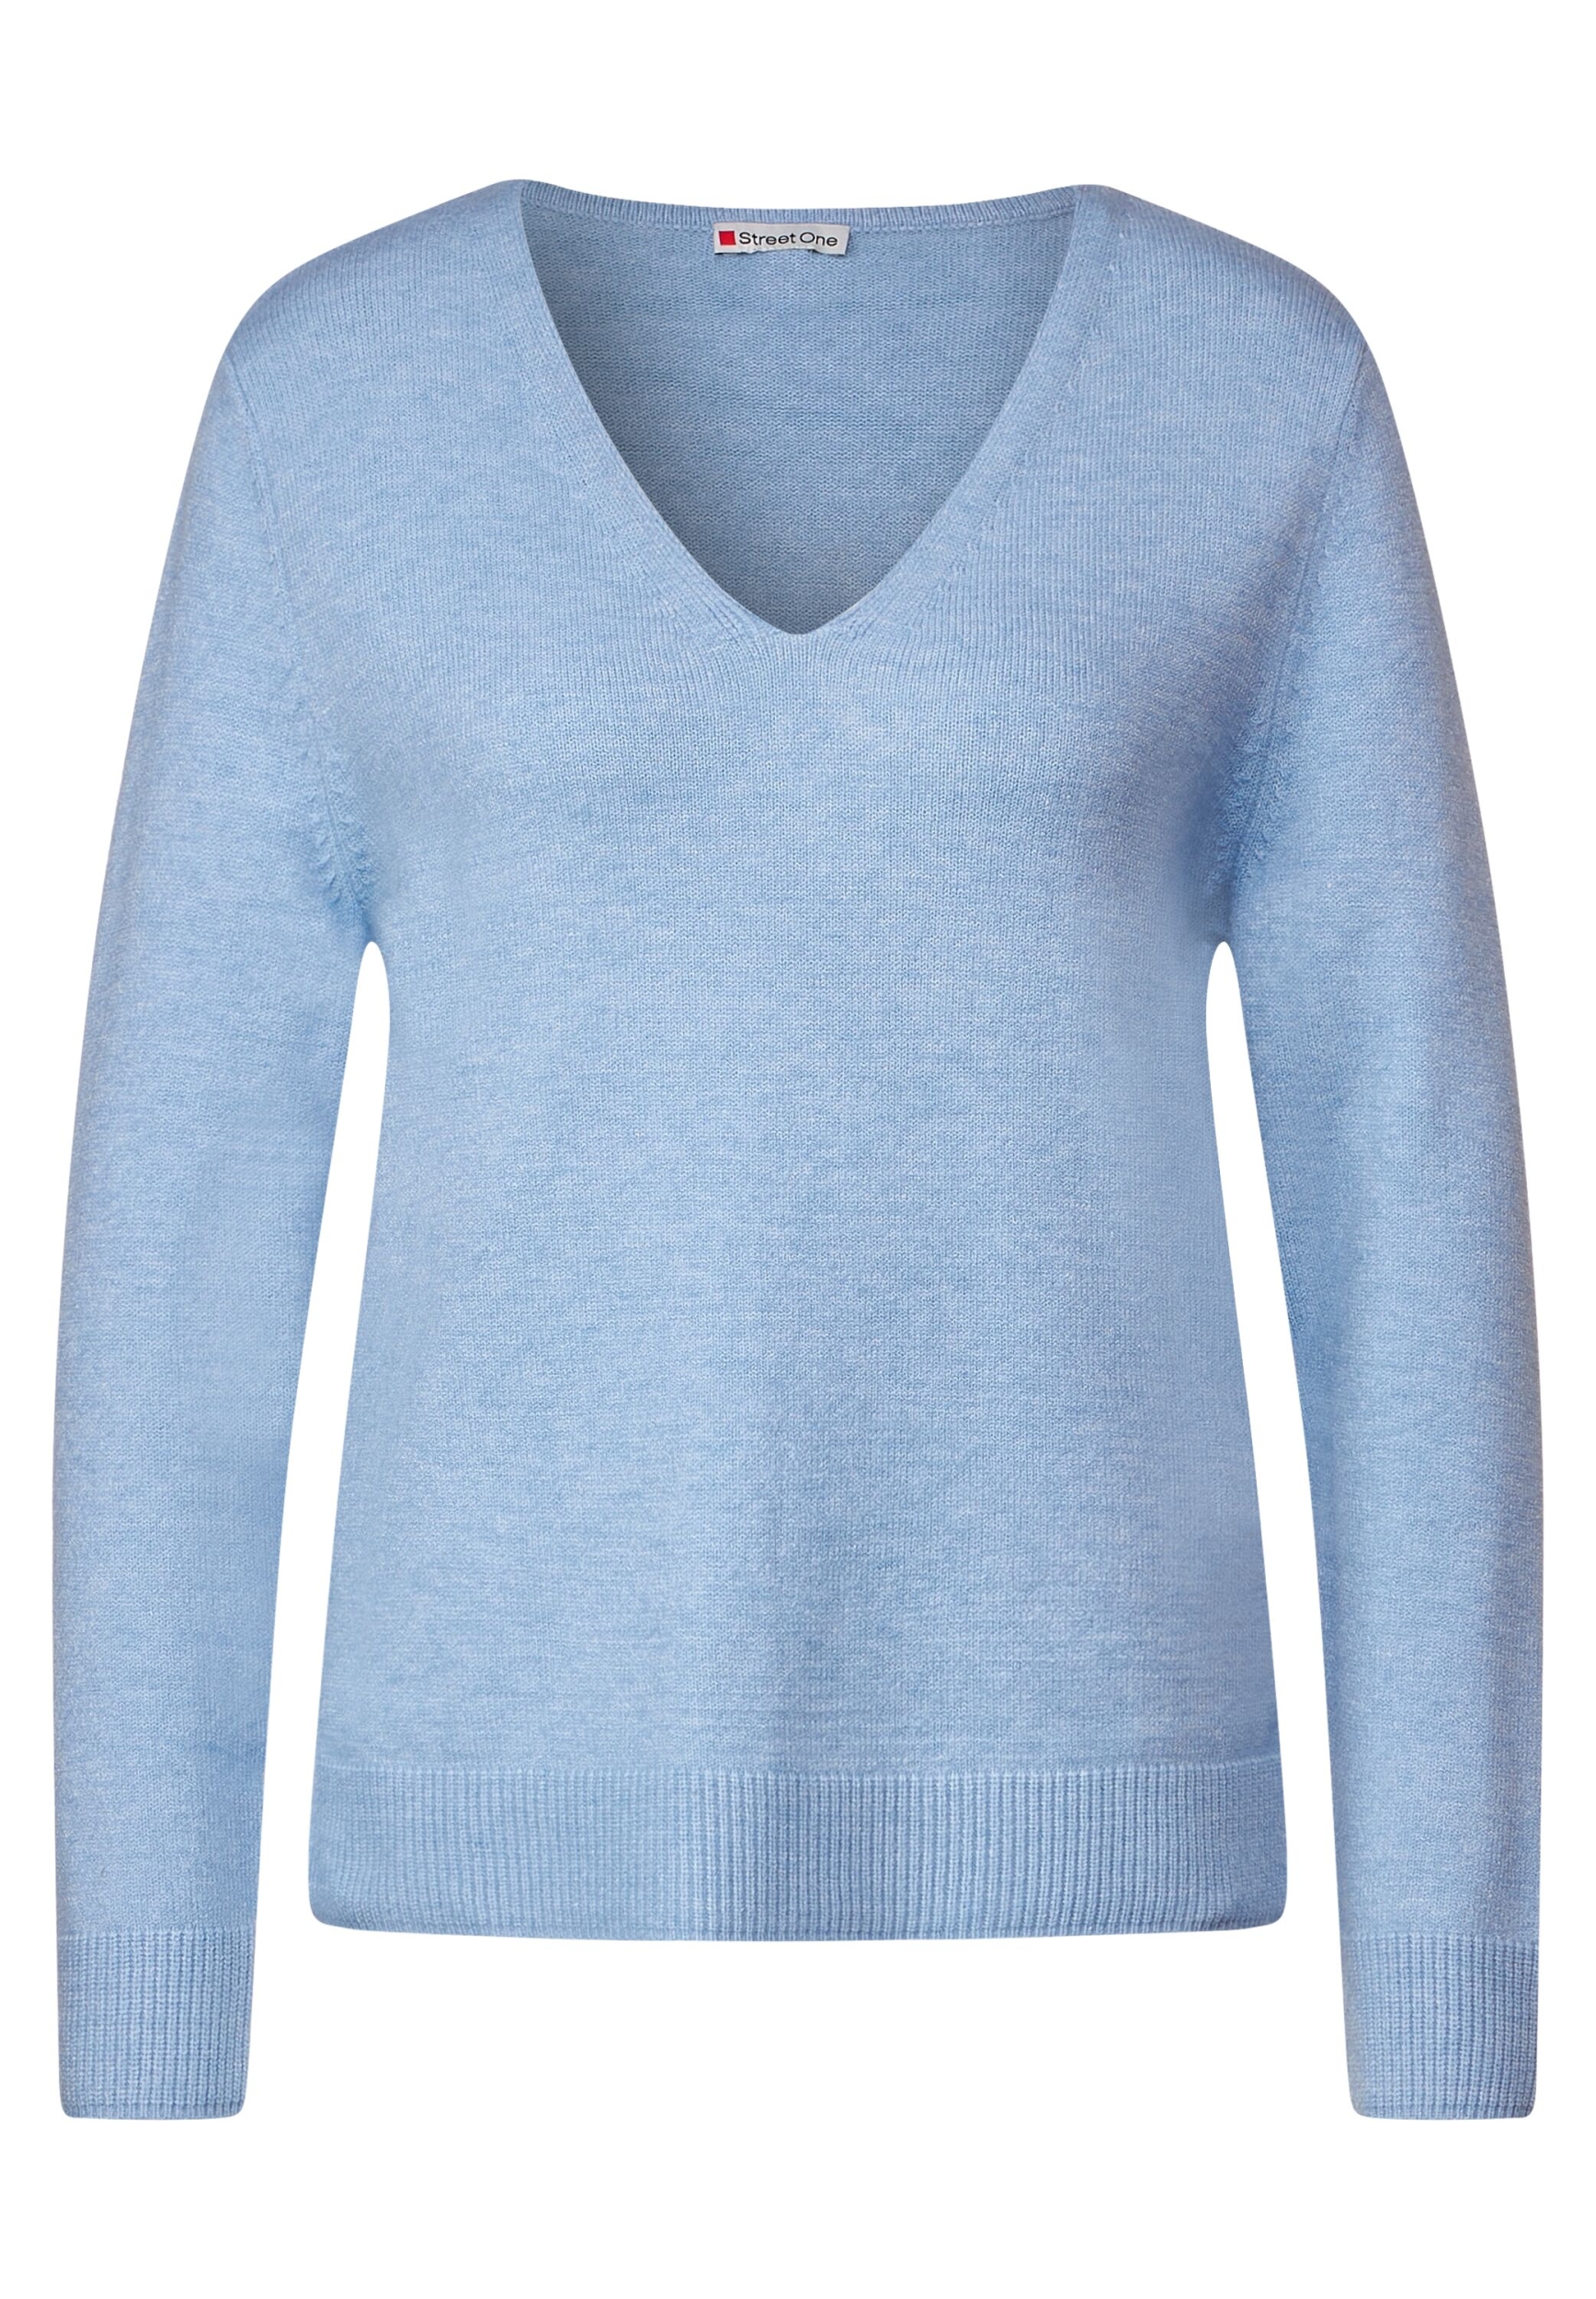 40 | feather melange blue LTD | A302343-14962-40 sweater QR v-neck |